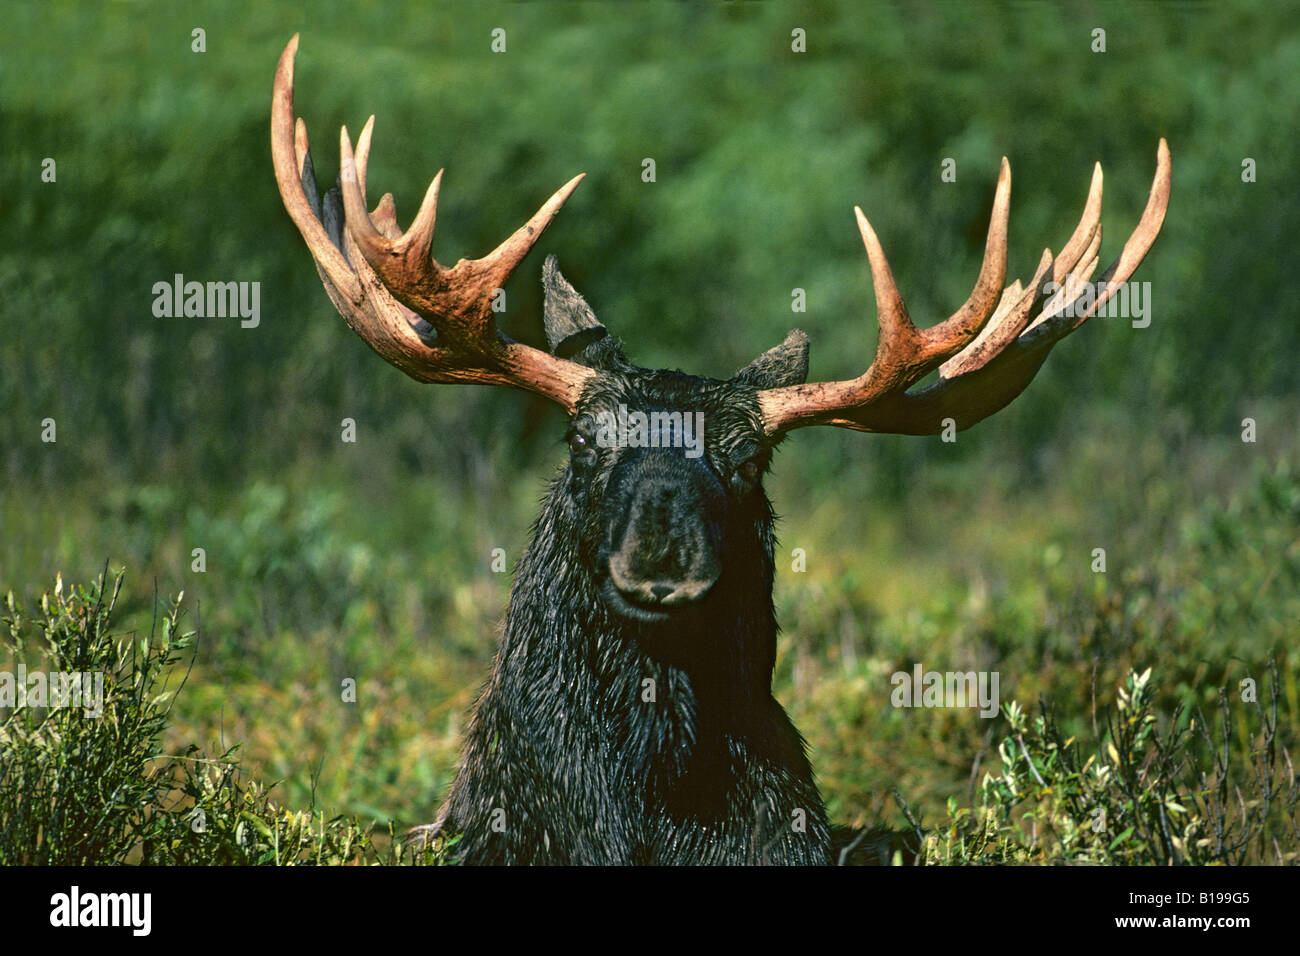 Bull moose (Alces alces) en el que la velvet recientemente se ha desprendido de su cornamenta y les deja manchadas con sangre, Teton Nat Foto de stock